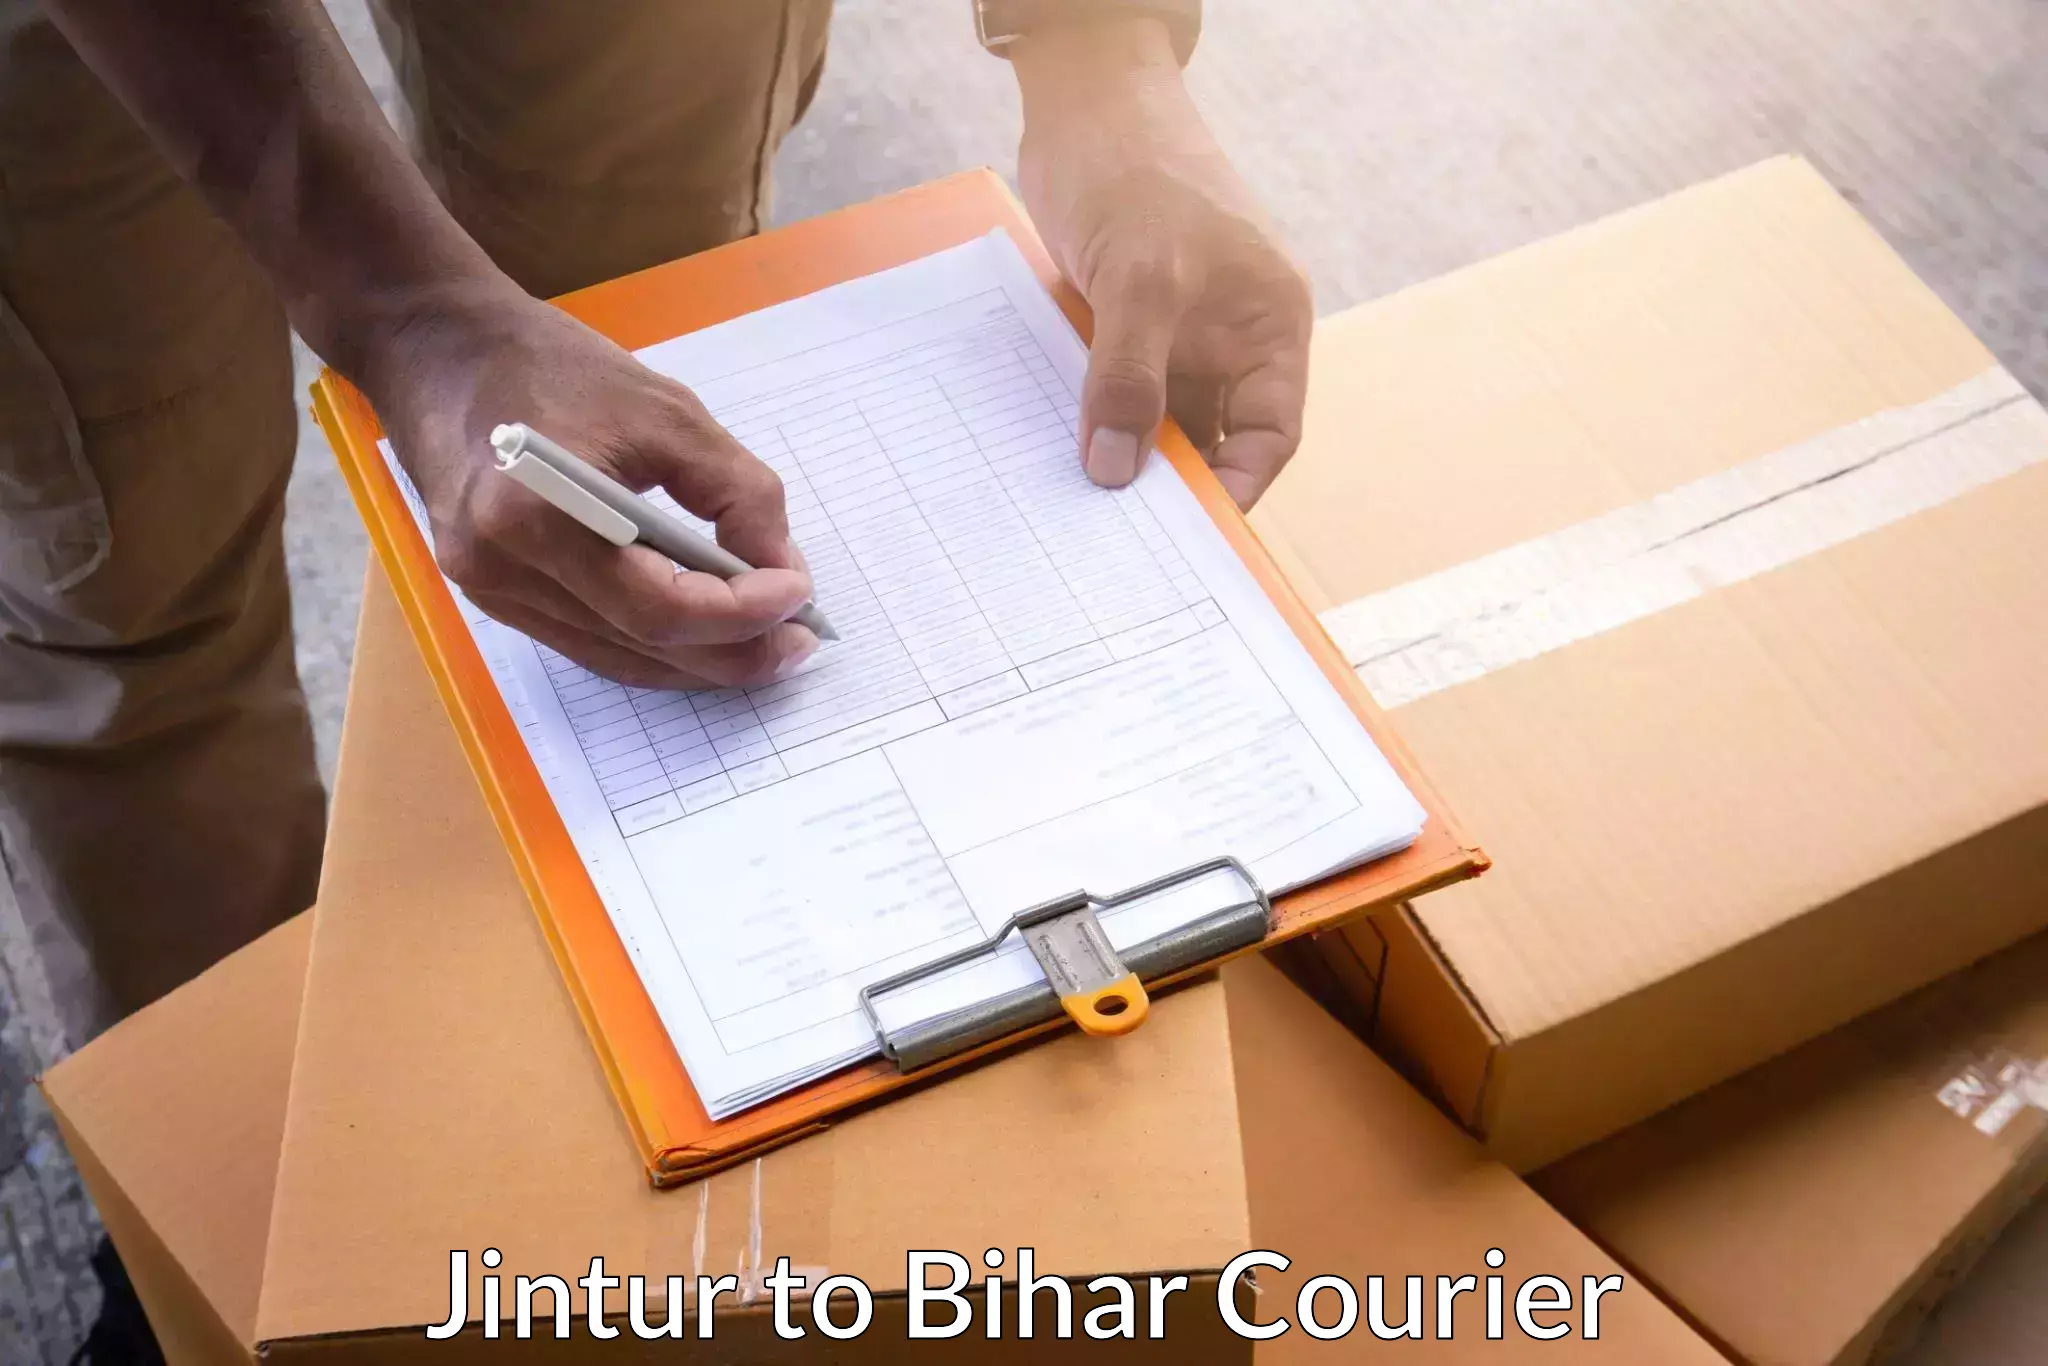 Customer-focused courier Jintur to Kishunganj